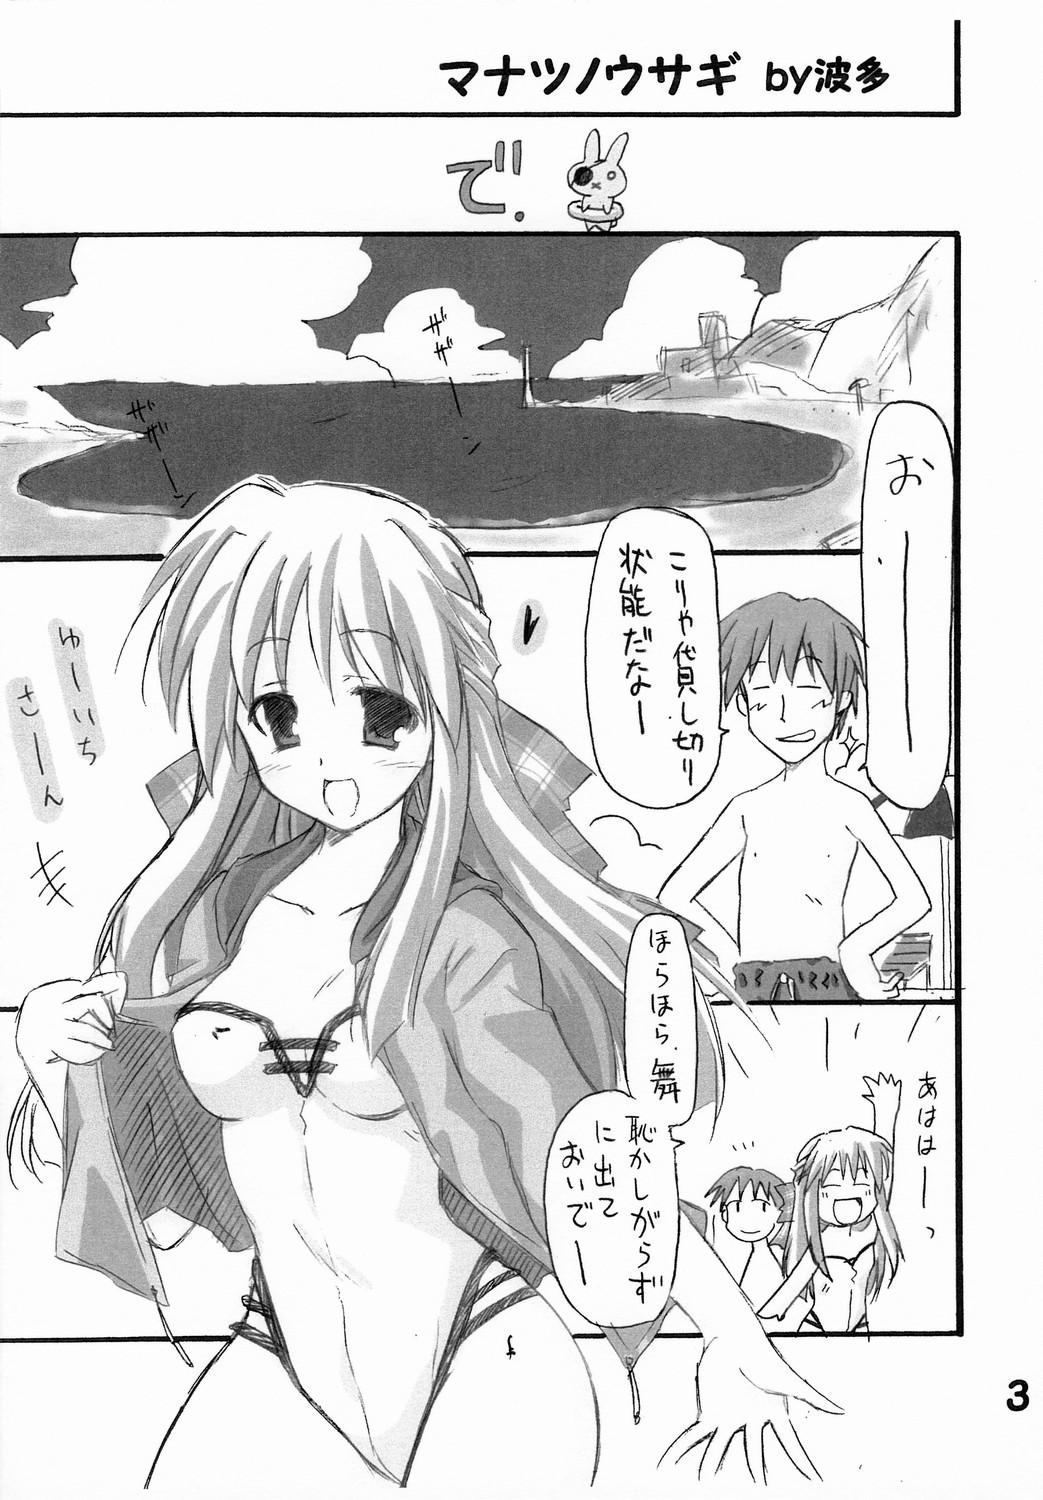 Leggings Haru na no ni - Manatsu no Usagi - Kanon Amatures Gone Wild - Page 4